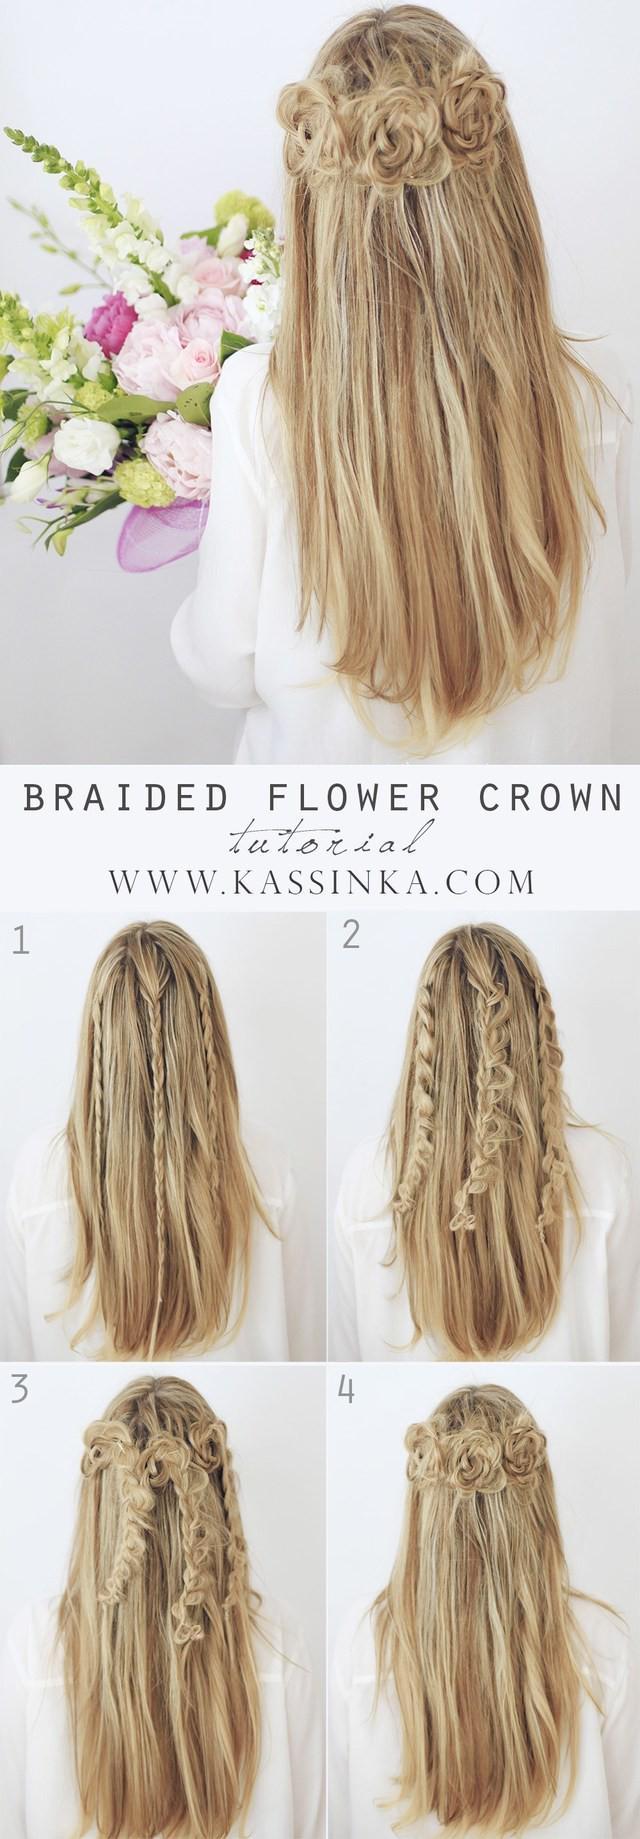 รูปภาพ:https://i1.wp.com/www.kassinka.com/wp-content/uploads/2015/05/braided-flower-crown-hair-tutorial-kassinka2.jpg?resize=1000%2C2873